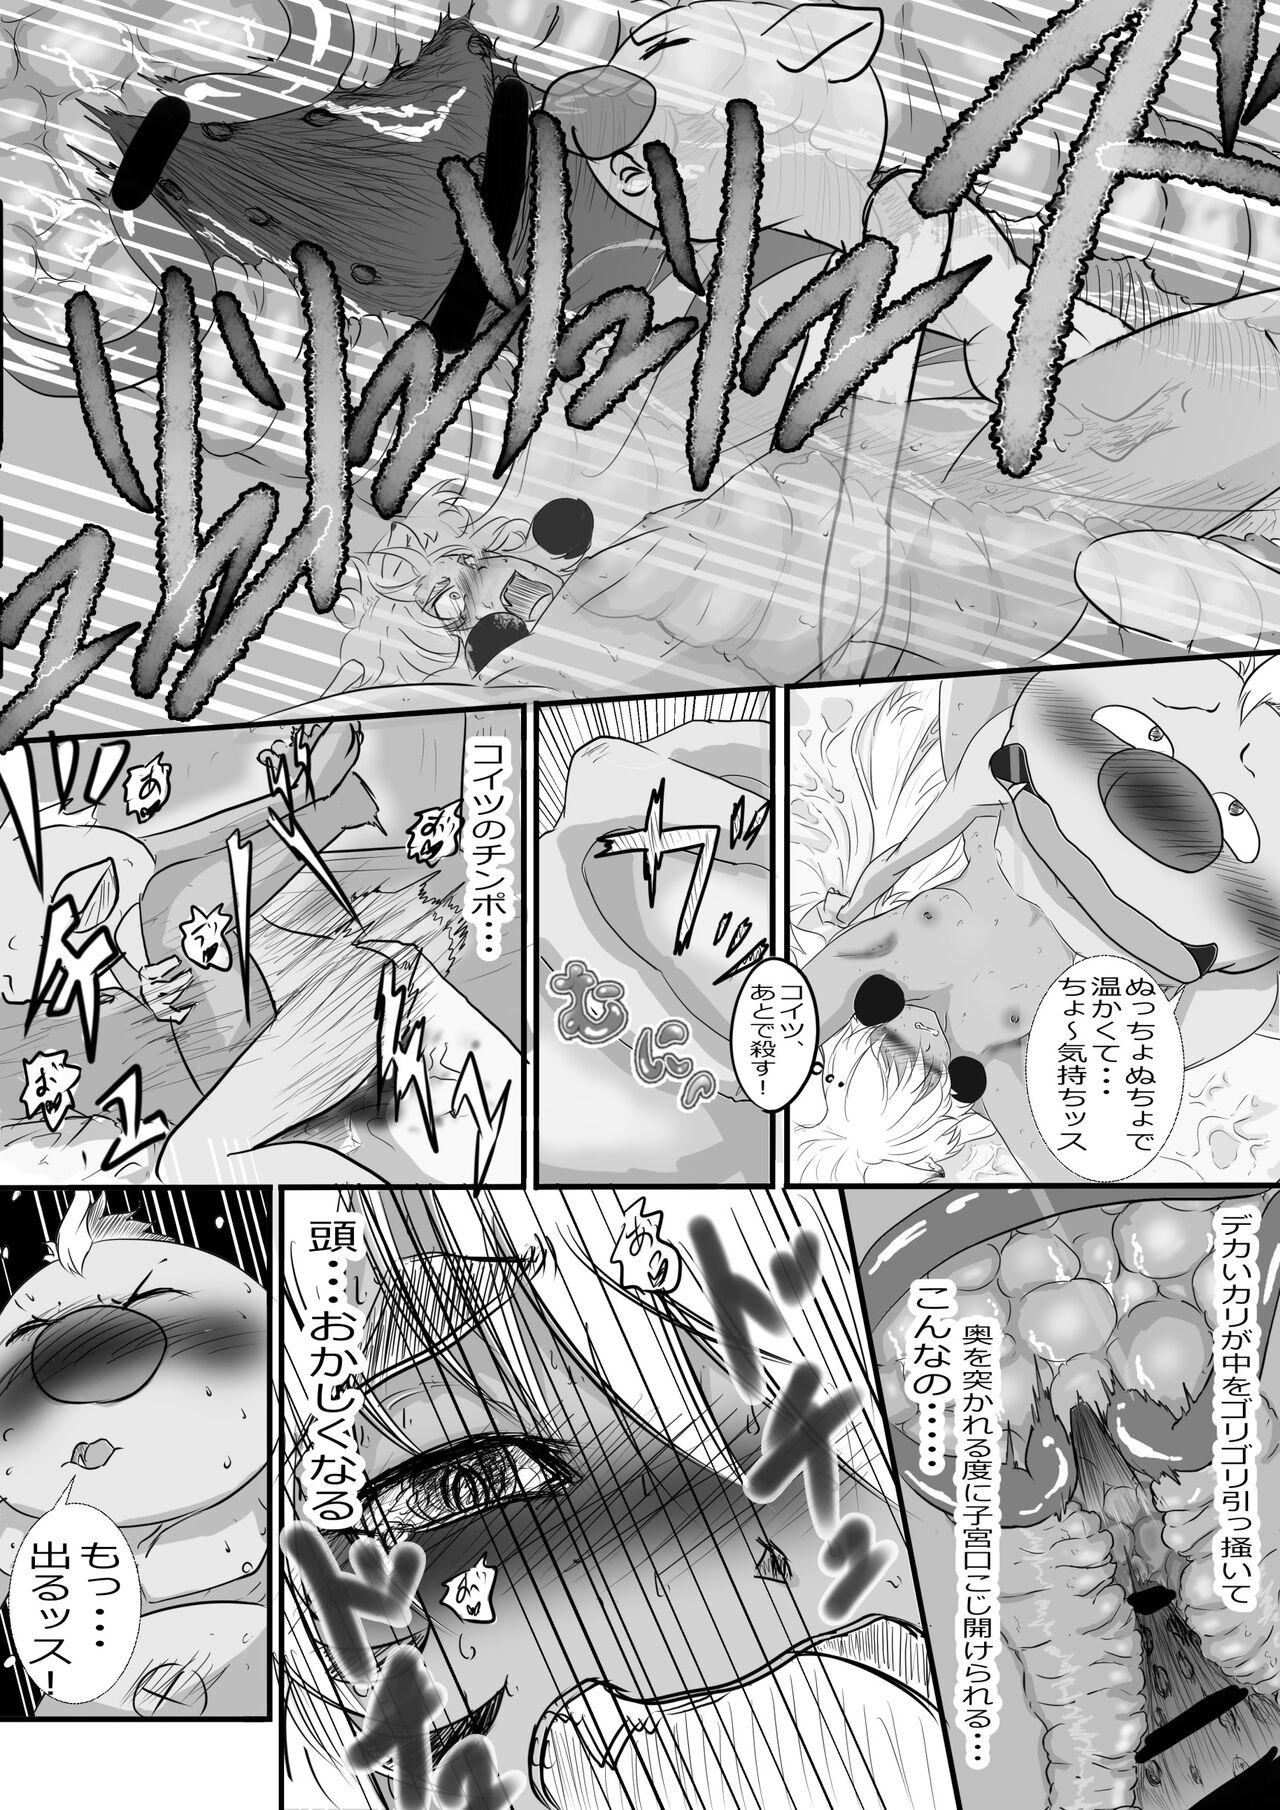 High Gobuta x Sfia - Tensei shitara slime datta ken Madura - Page 3